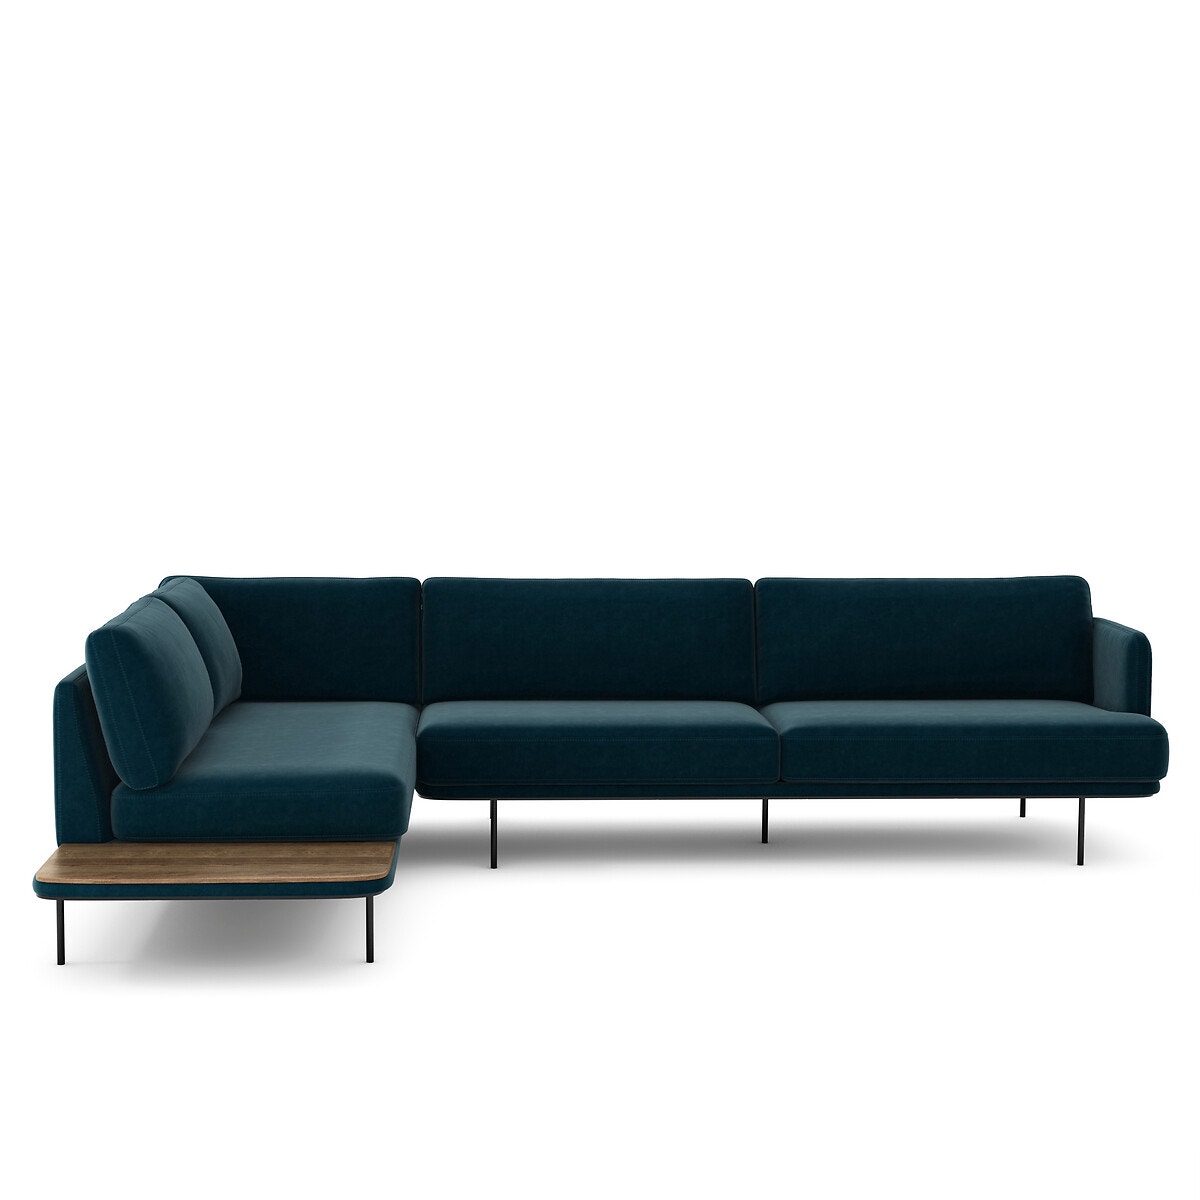 Σπίτι > Έπιπλα > Καθιστικό > Καναπέδες > Γωνιακοί καναπέδες Γωνιακός καναπές από βελούδο Μ221xΠ309xΥ80cm